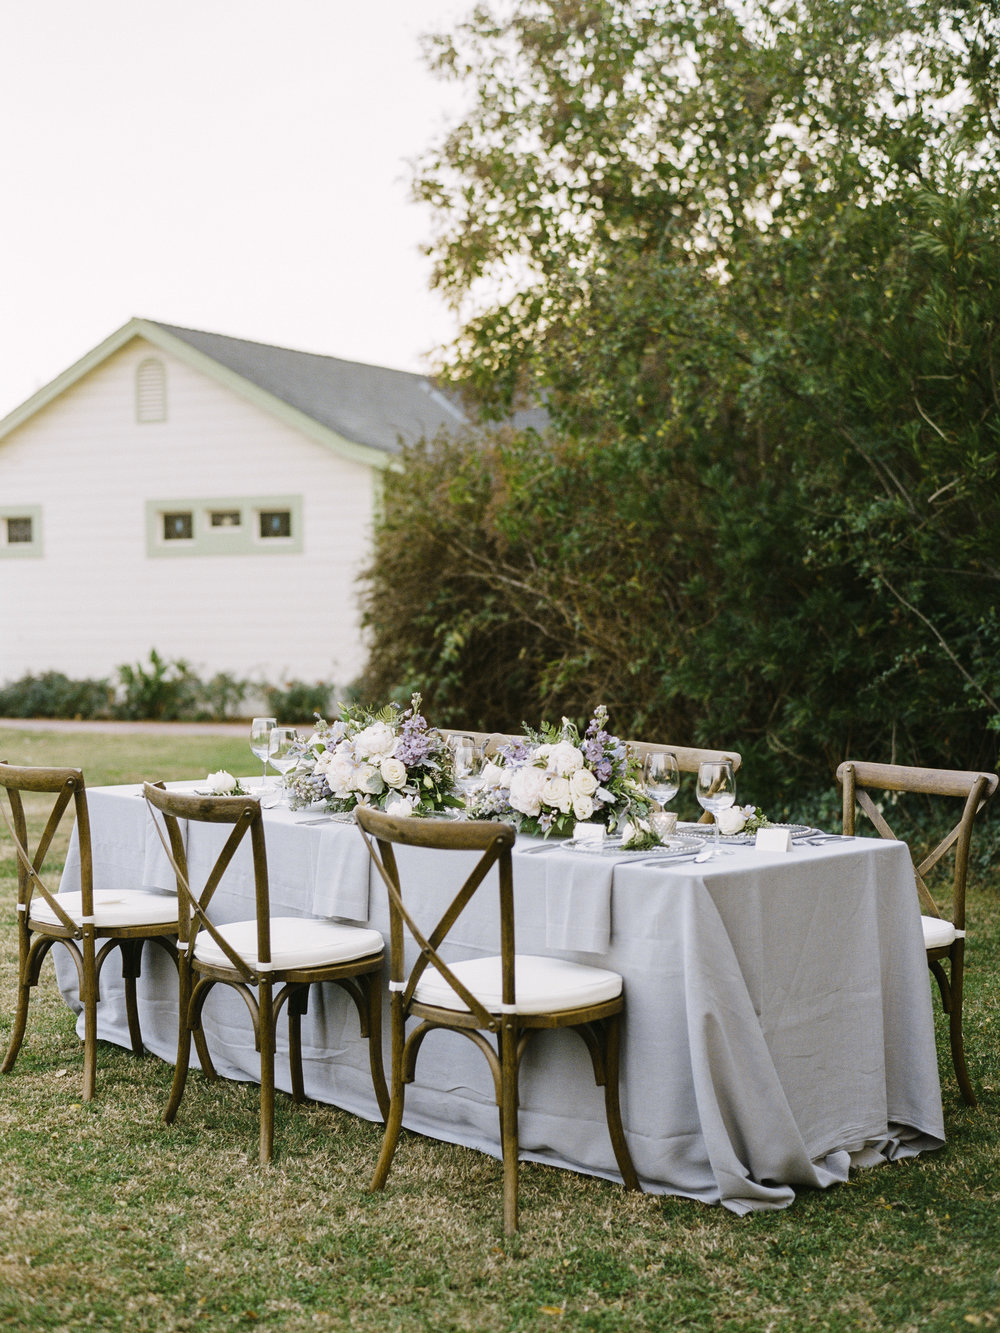 Violette-fleurs-roseville-sacramento-california-Flower-farm-inn-wedding-florist-spring-gray-elegant-tablescape-blush-peach.jpg